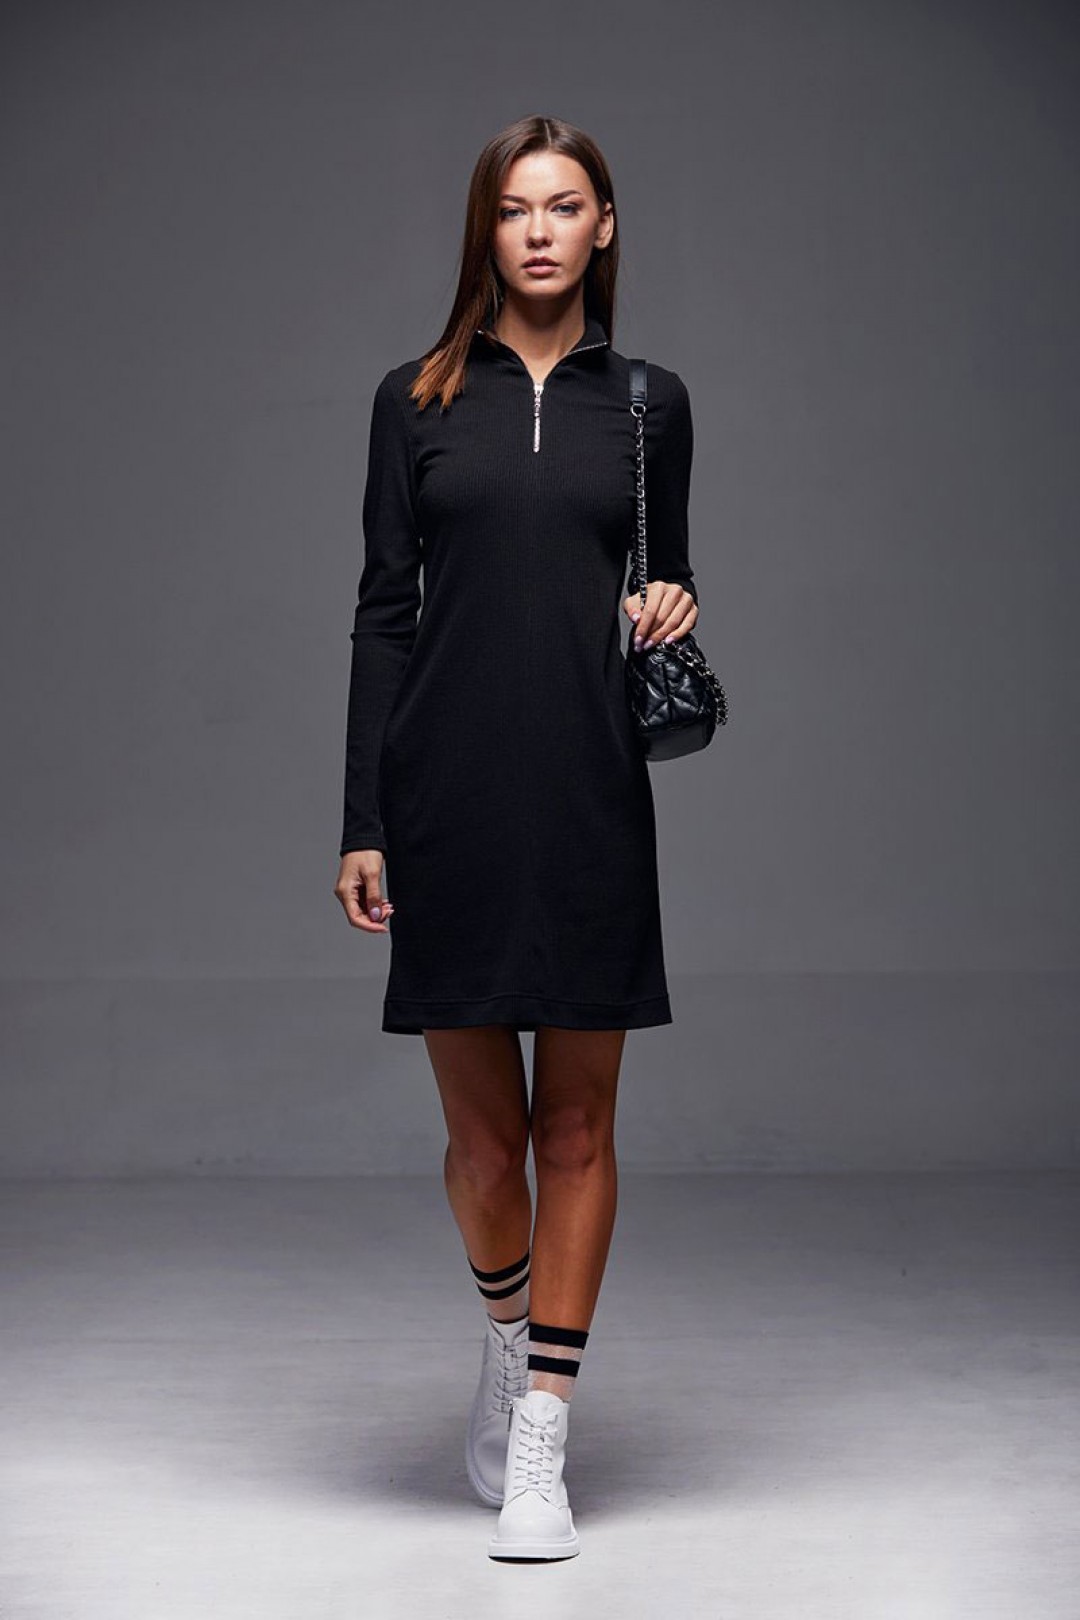 Платье Andrea Fashion AF-185 черный